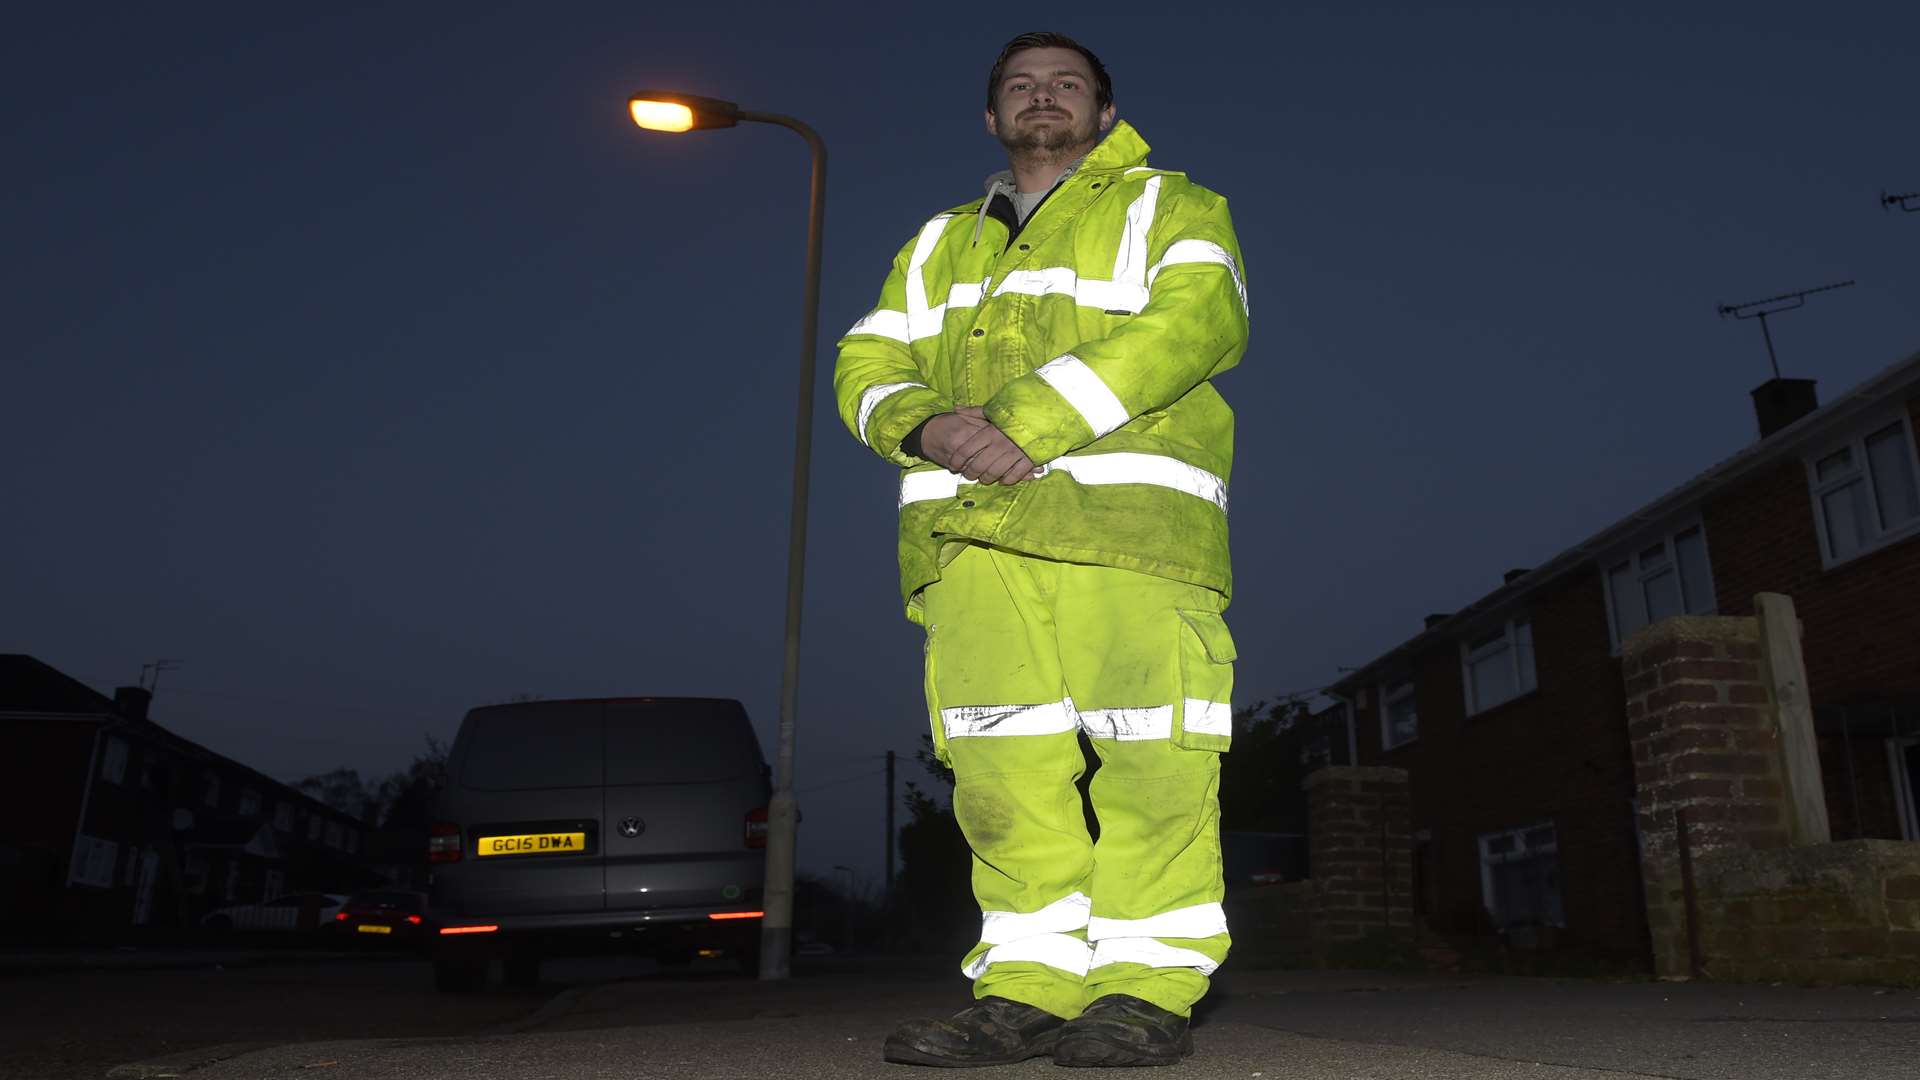 Engineer Robert Howell used Facebook to identify street lights in need of repair.